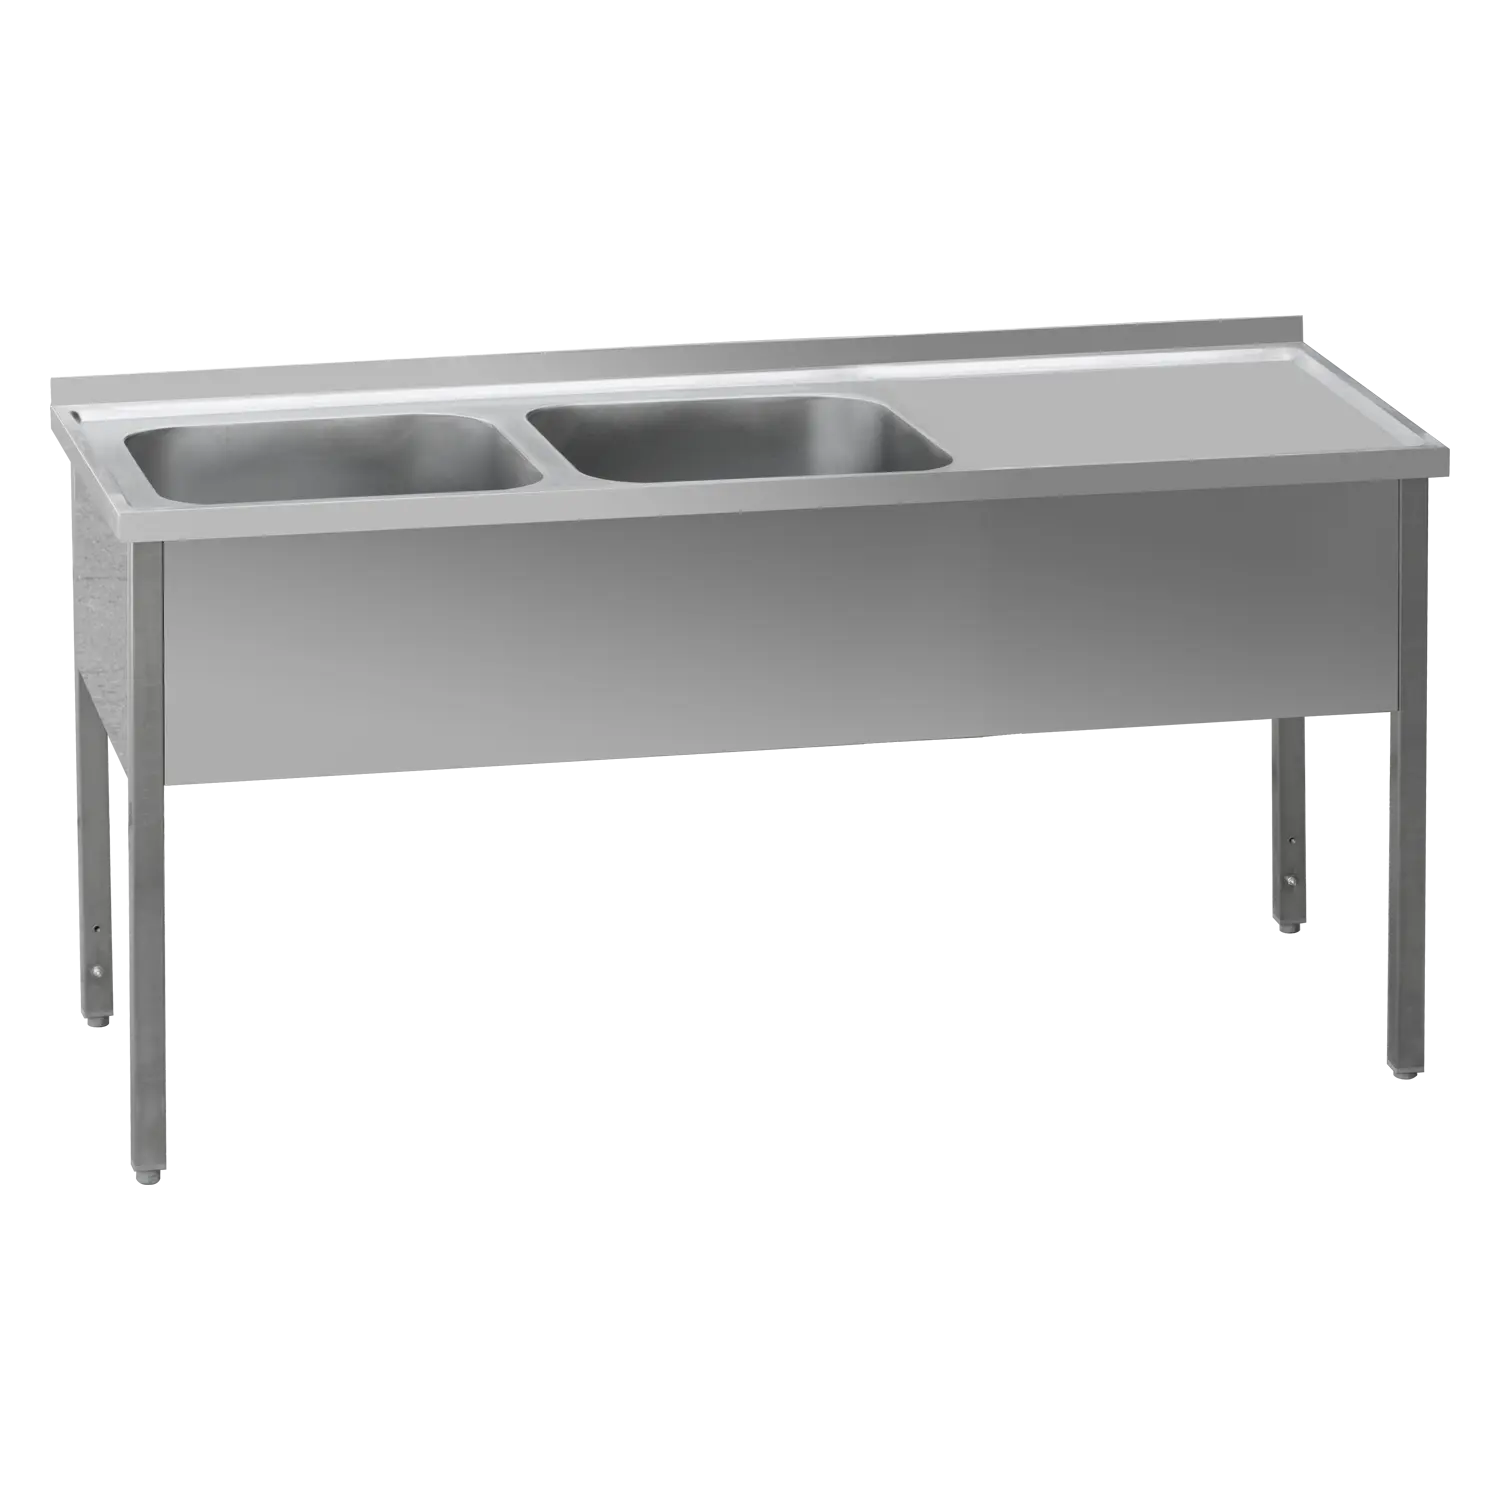 MSDOP 7014 - Stůl mycí 140x70x90 - 2x dřez 40x50x30 odkapávací plocha pravá